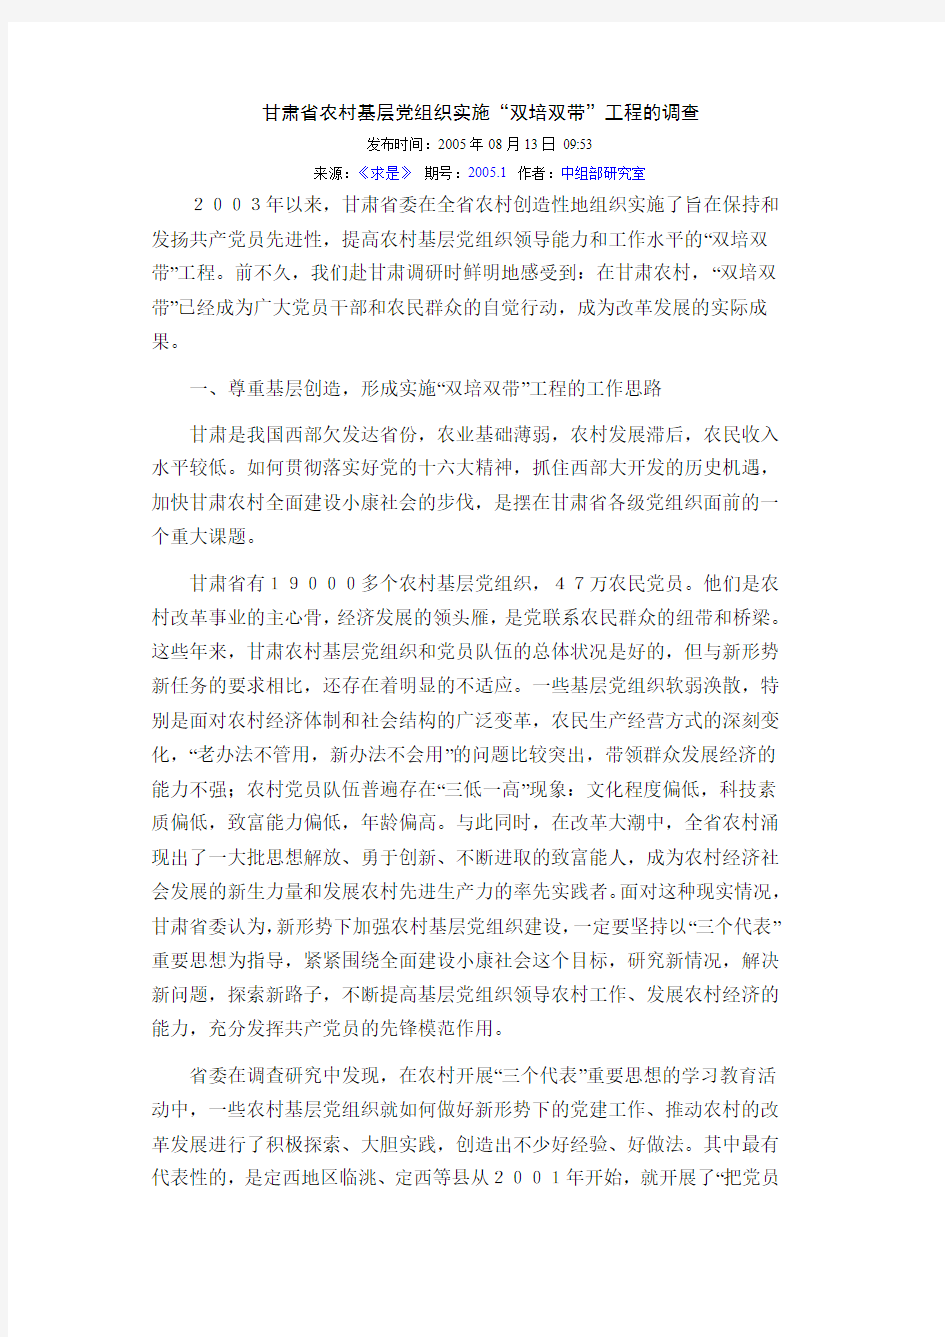 甘肃省农村基层党组织实施“双培双带”工程的调查